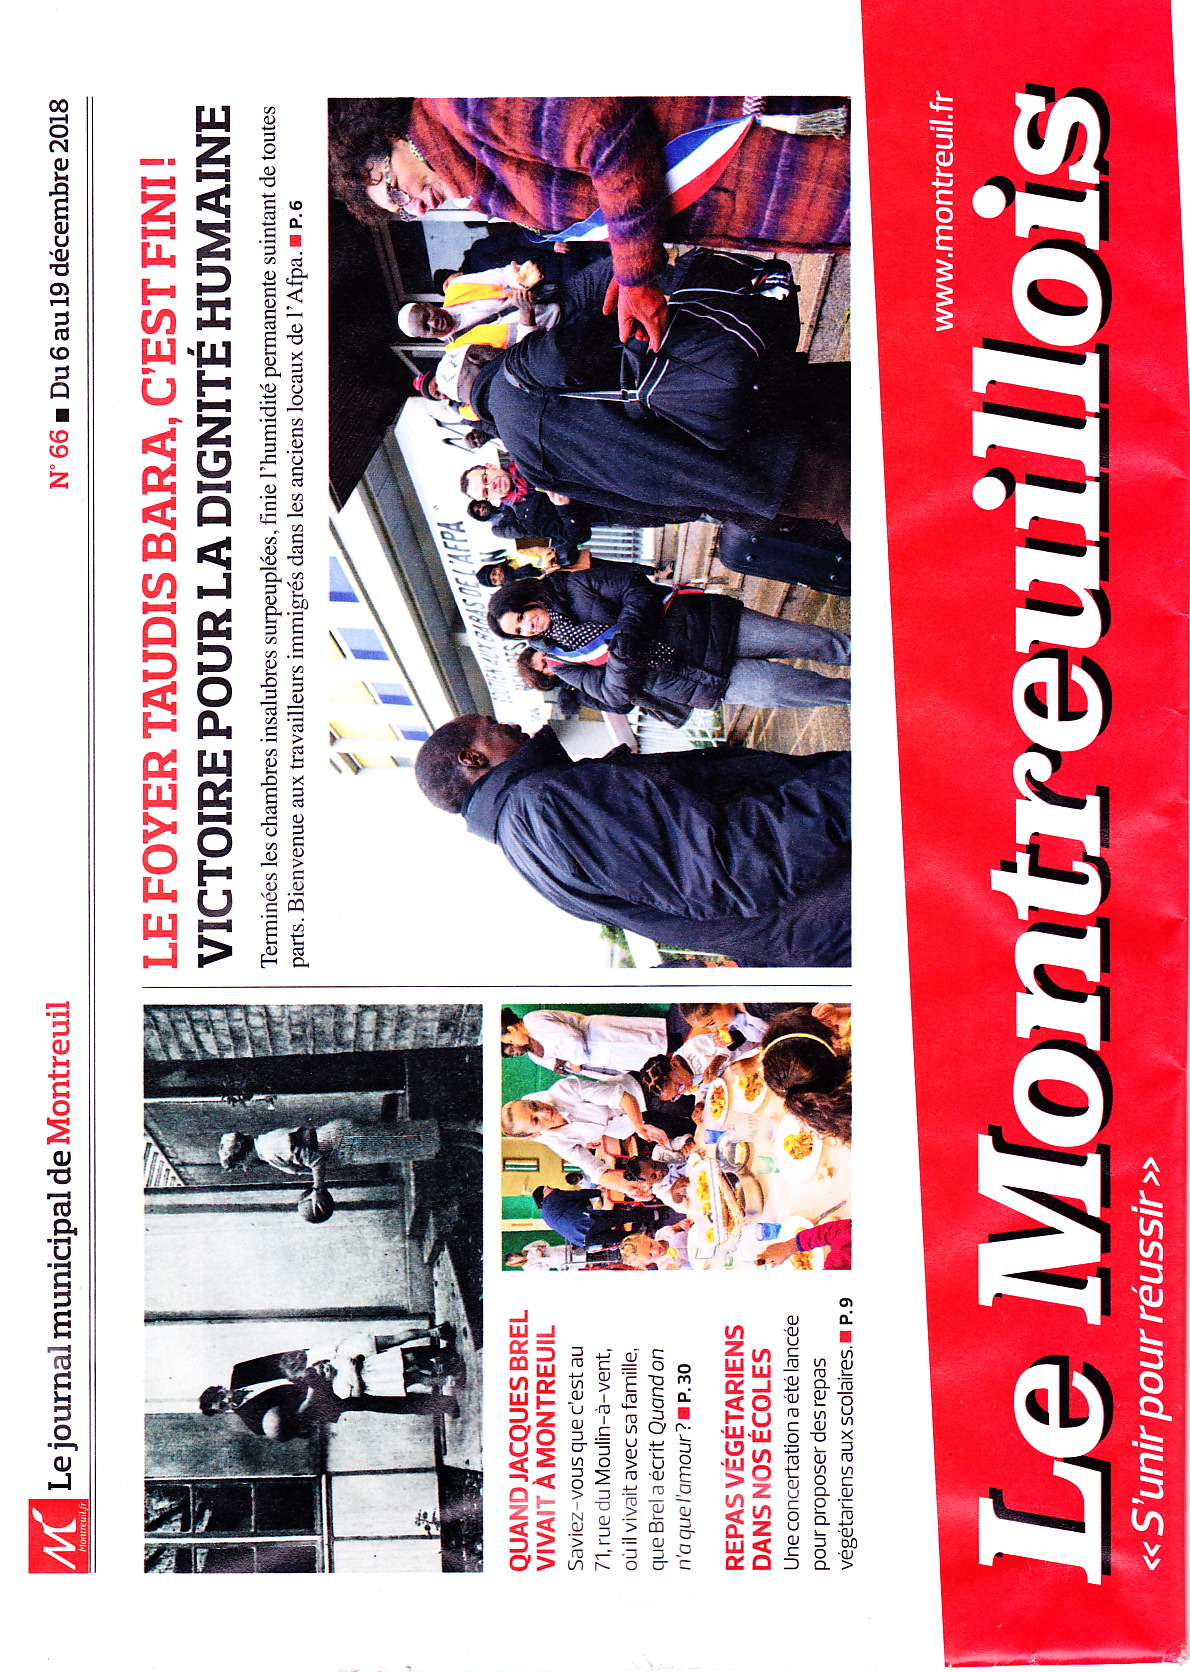 Le Montreuillois #66 6 décembre 2018